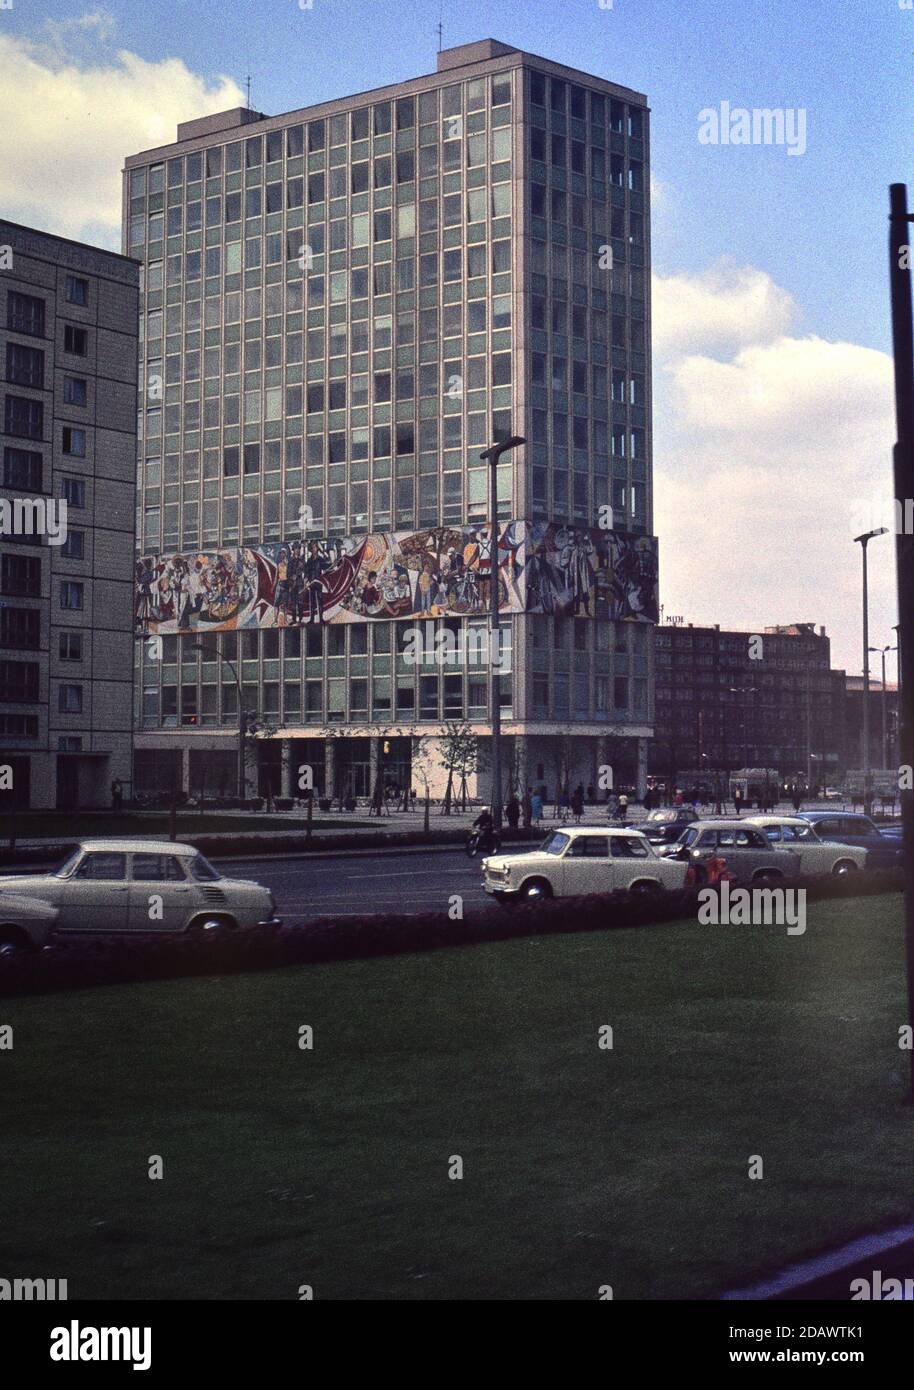 Kommunistisches Wandgemälde auf einem Büroblock, aufgenommen im Juni 1965, Ost-Berlin, deutsch.Dia aufgenommen auf Agfacoulour CT18 Dia Film mit einem 35mm Petri 5 SL Stockfoto